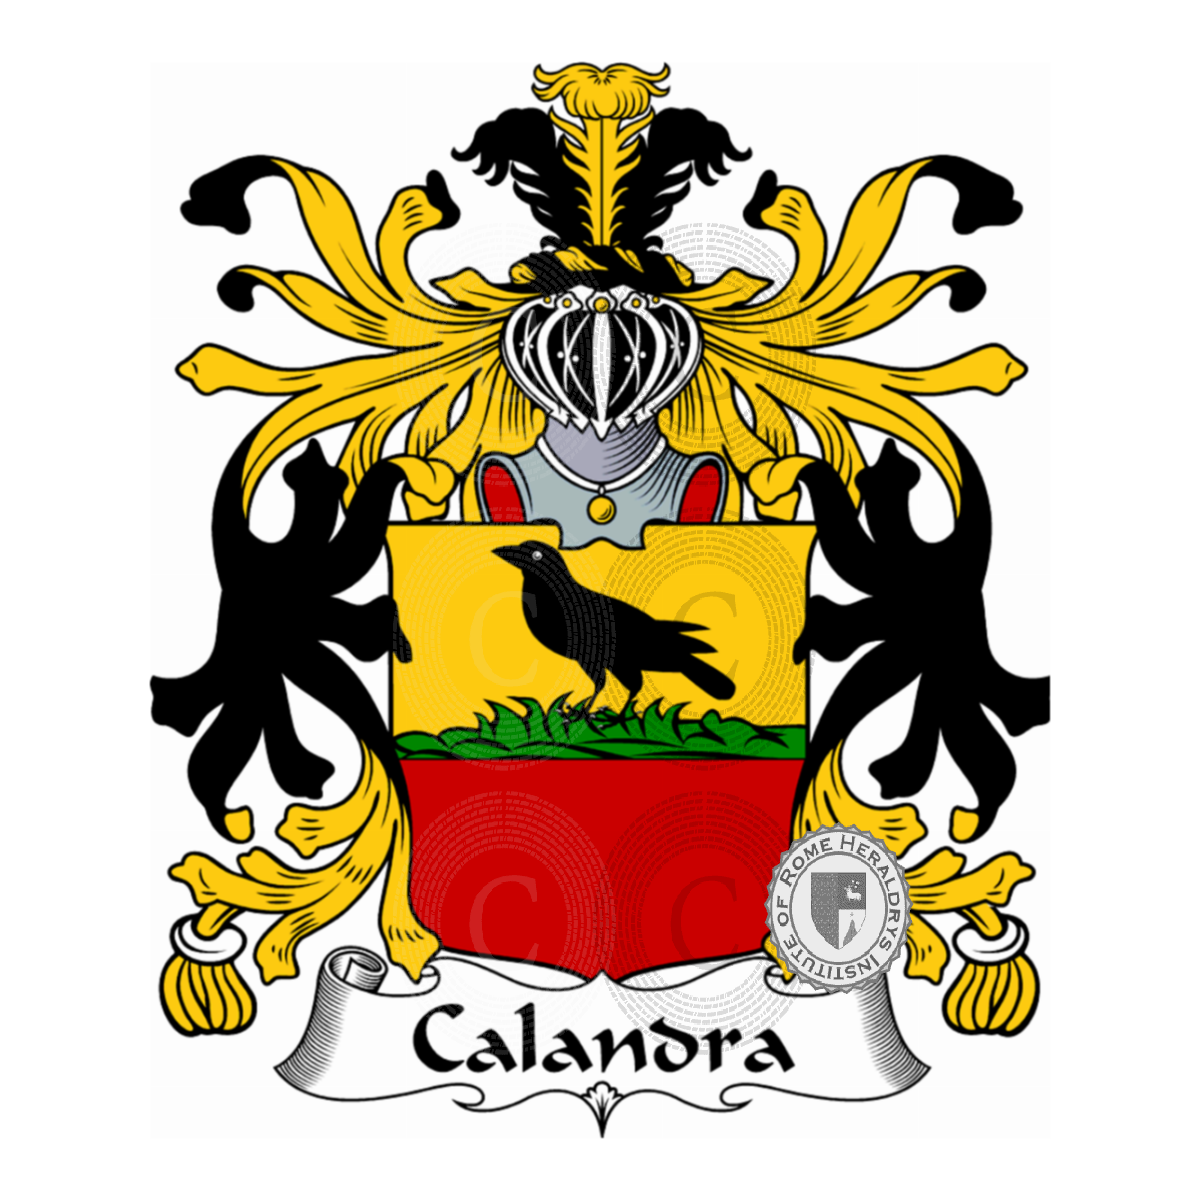 Stemma della famigliaCalandra, Calandri,Callandra